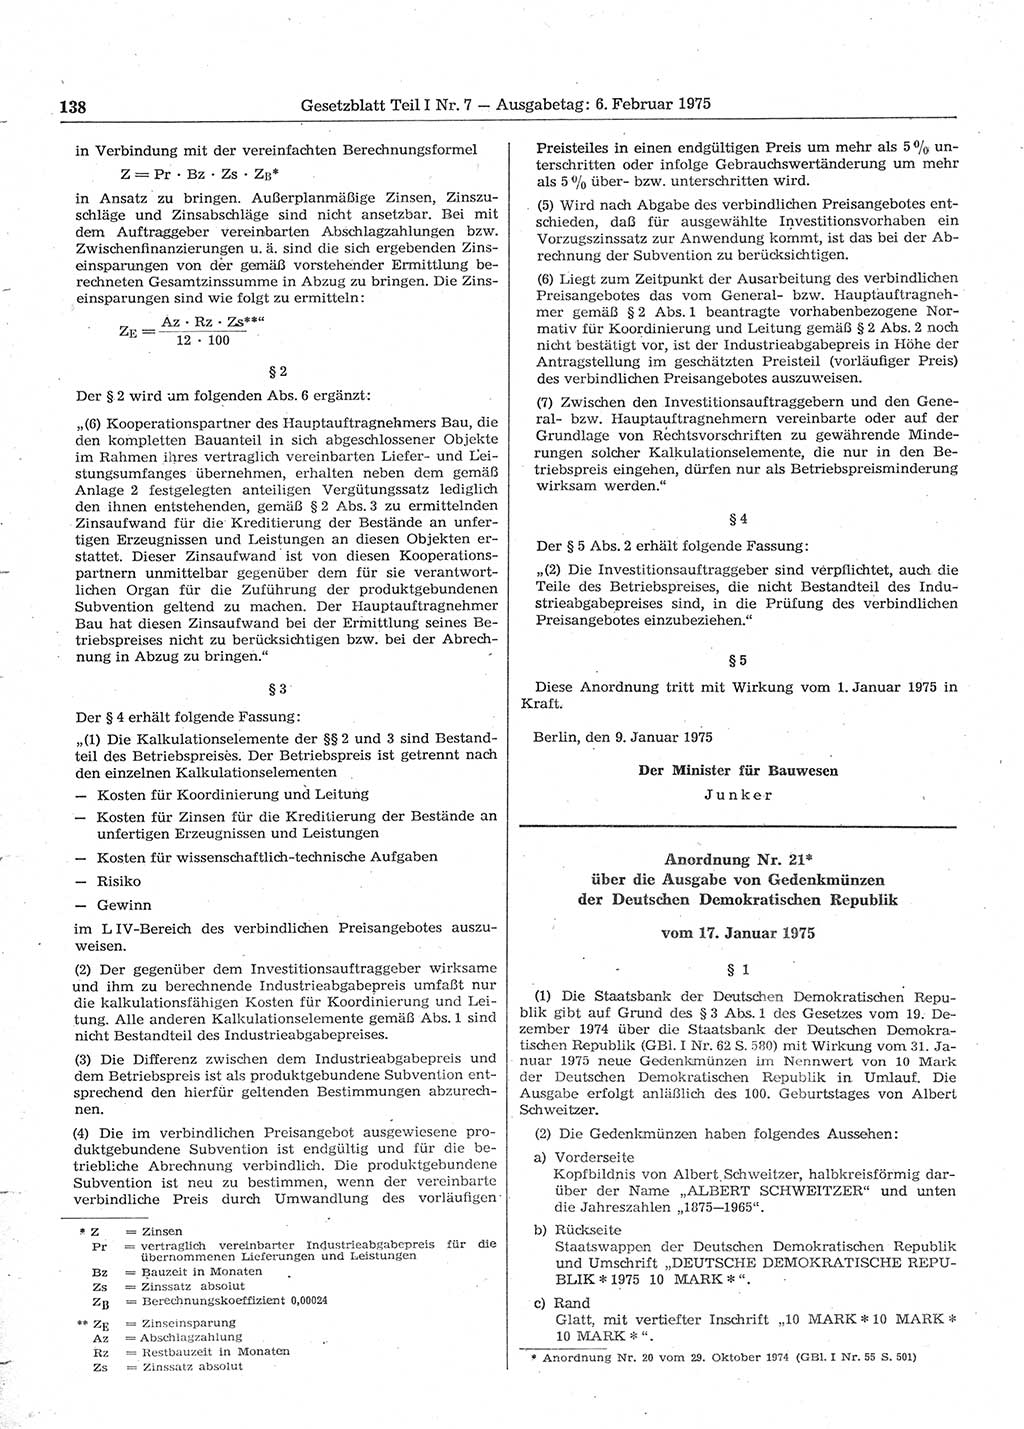 Gesetzblatt (GBl.) der Deutschen Demokratischen Republik (DDR) Teil Ⅰ 1975, Seite 138 (GBl. DDR Ⅰ 1975, S. 138)